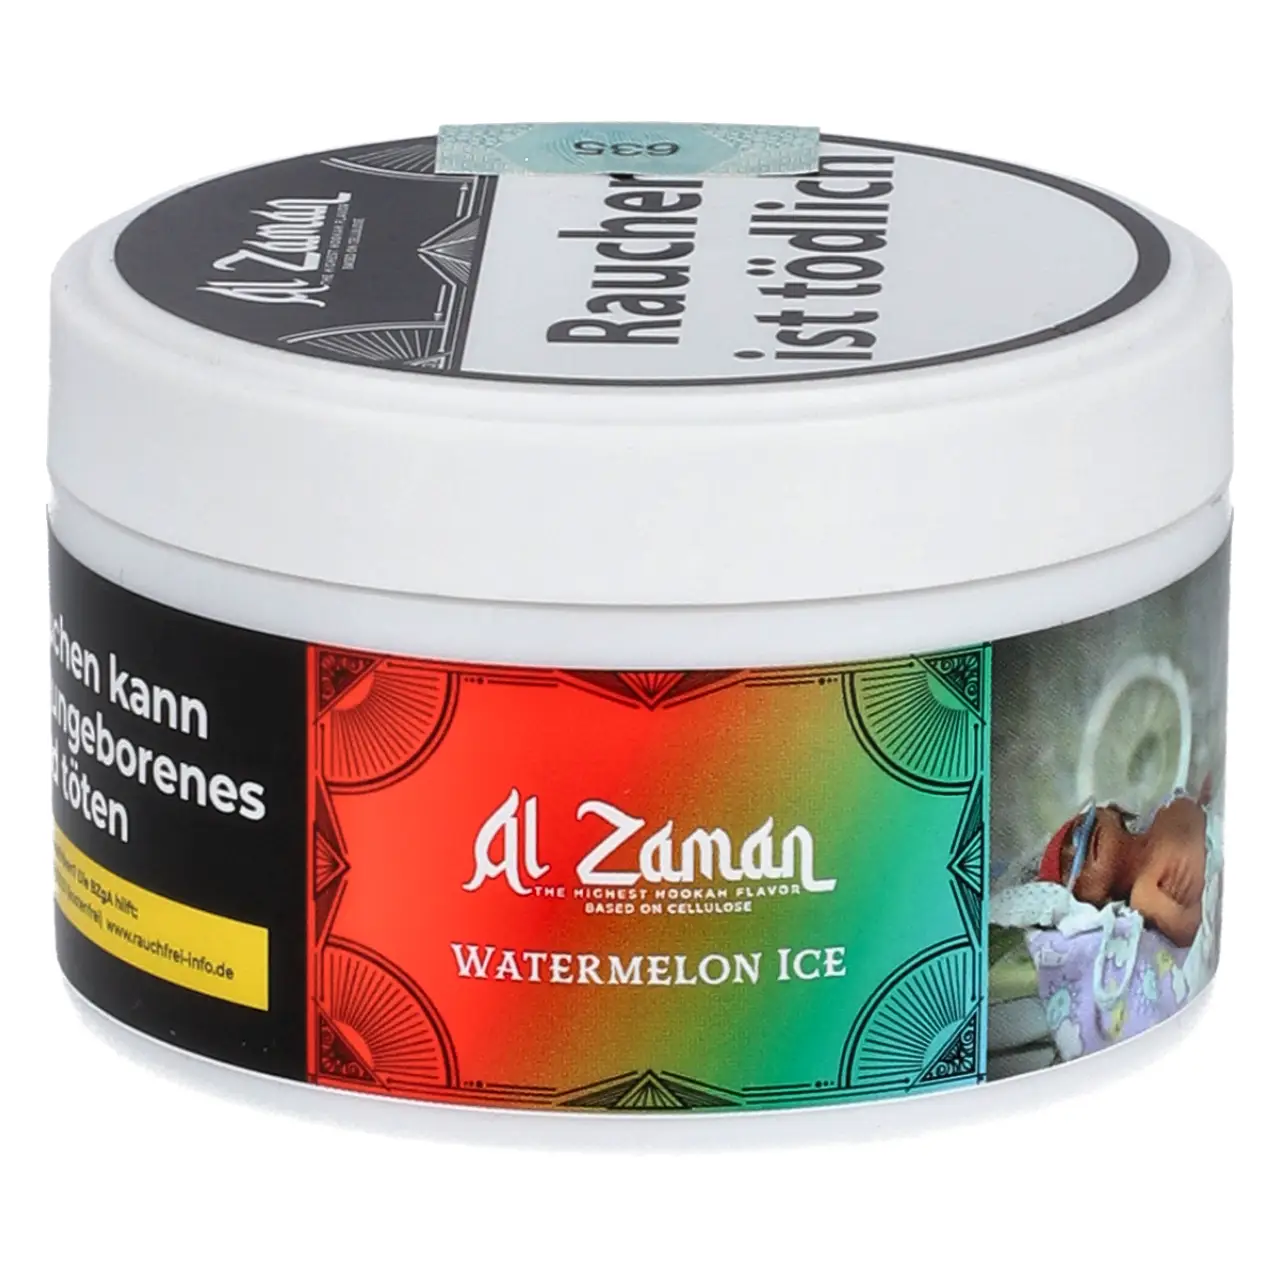 Al Zaman nikotinfreier Shisha Tabak Watermelon Ice - Wassermelone Ice - 25g